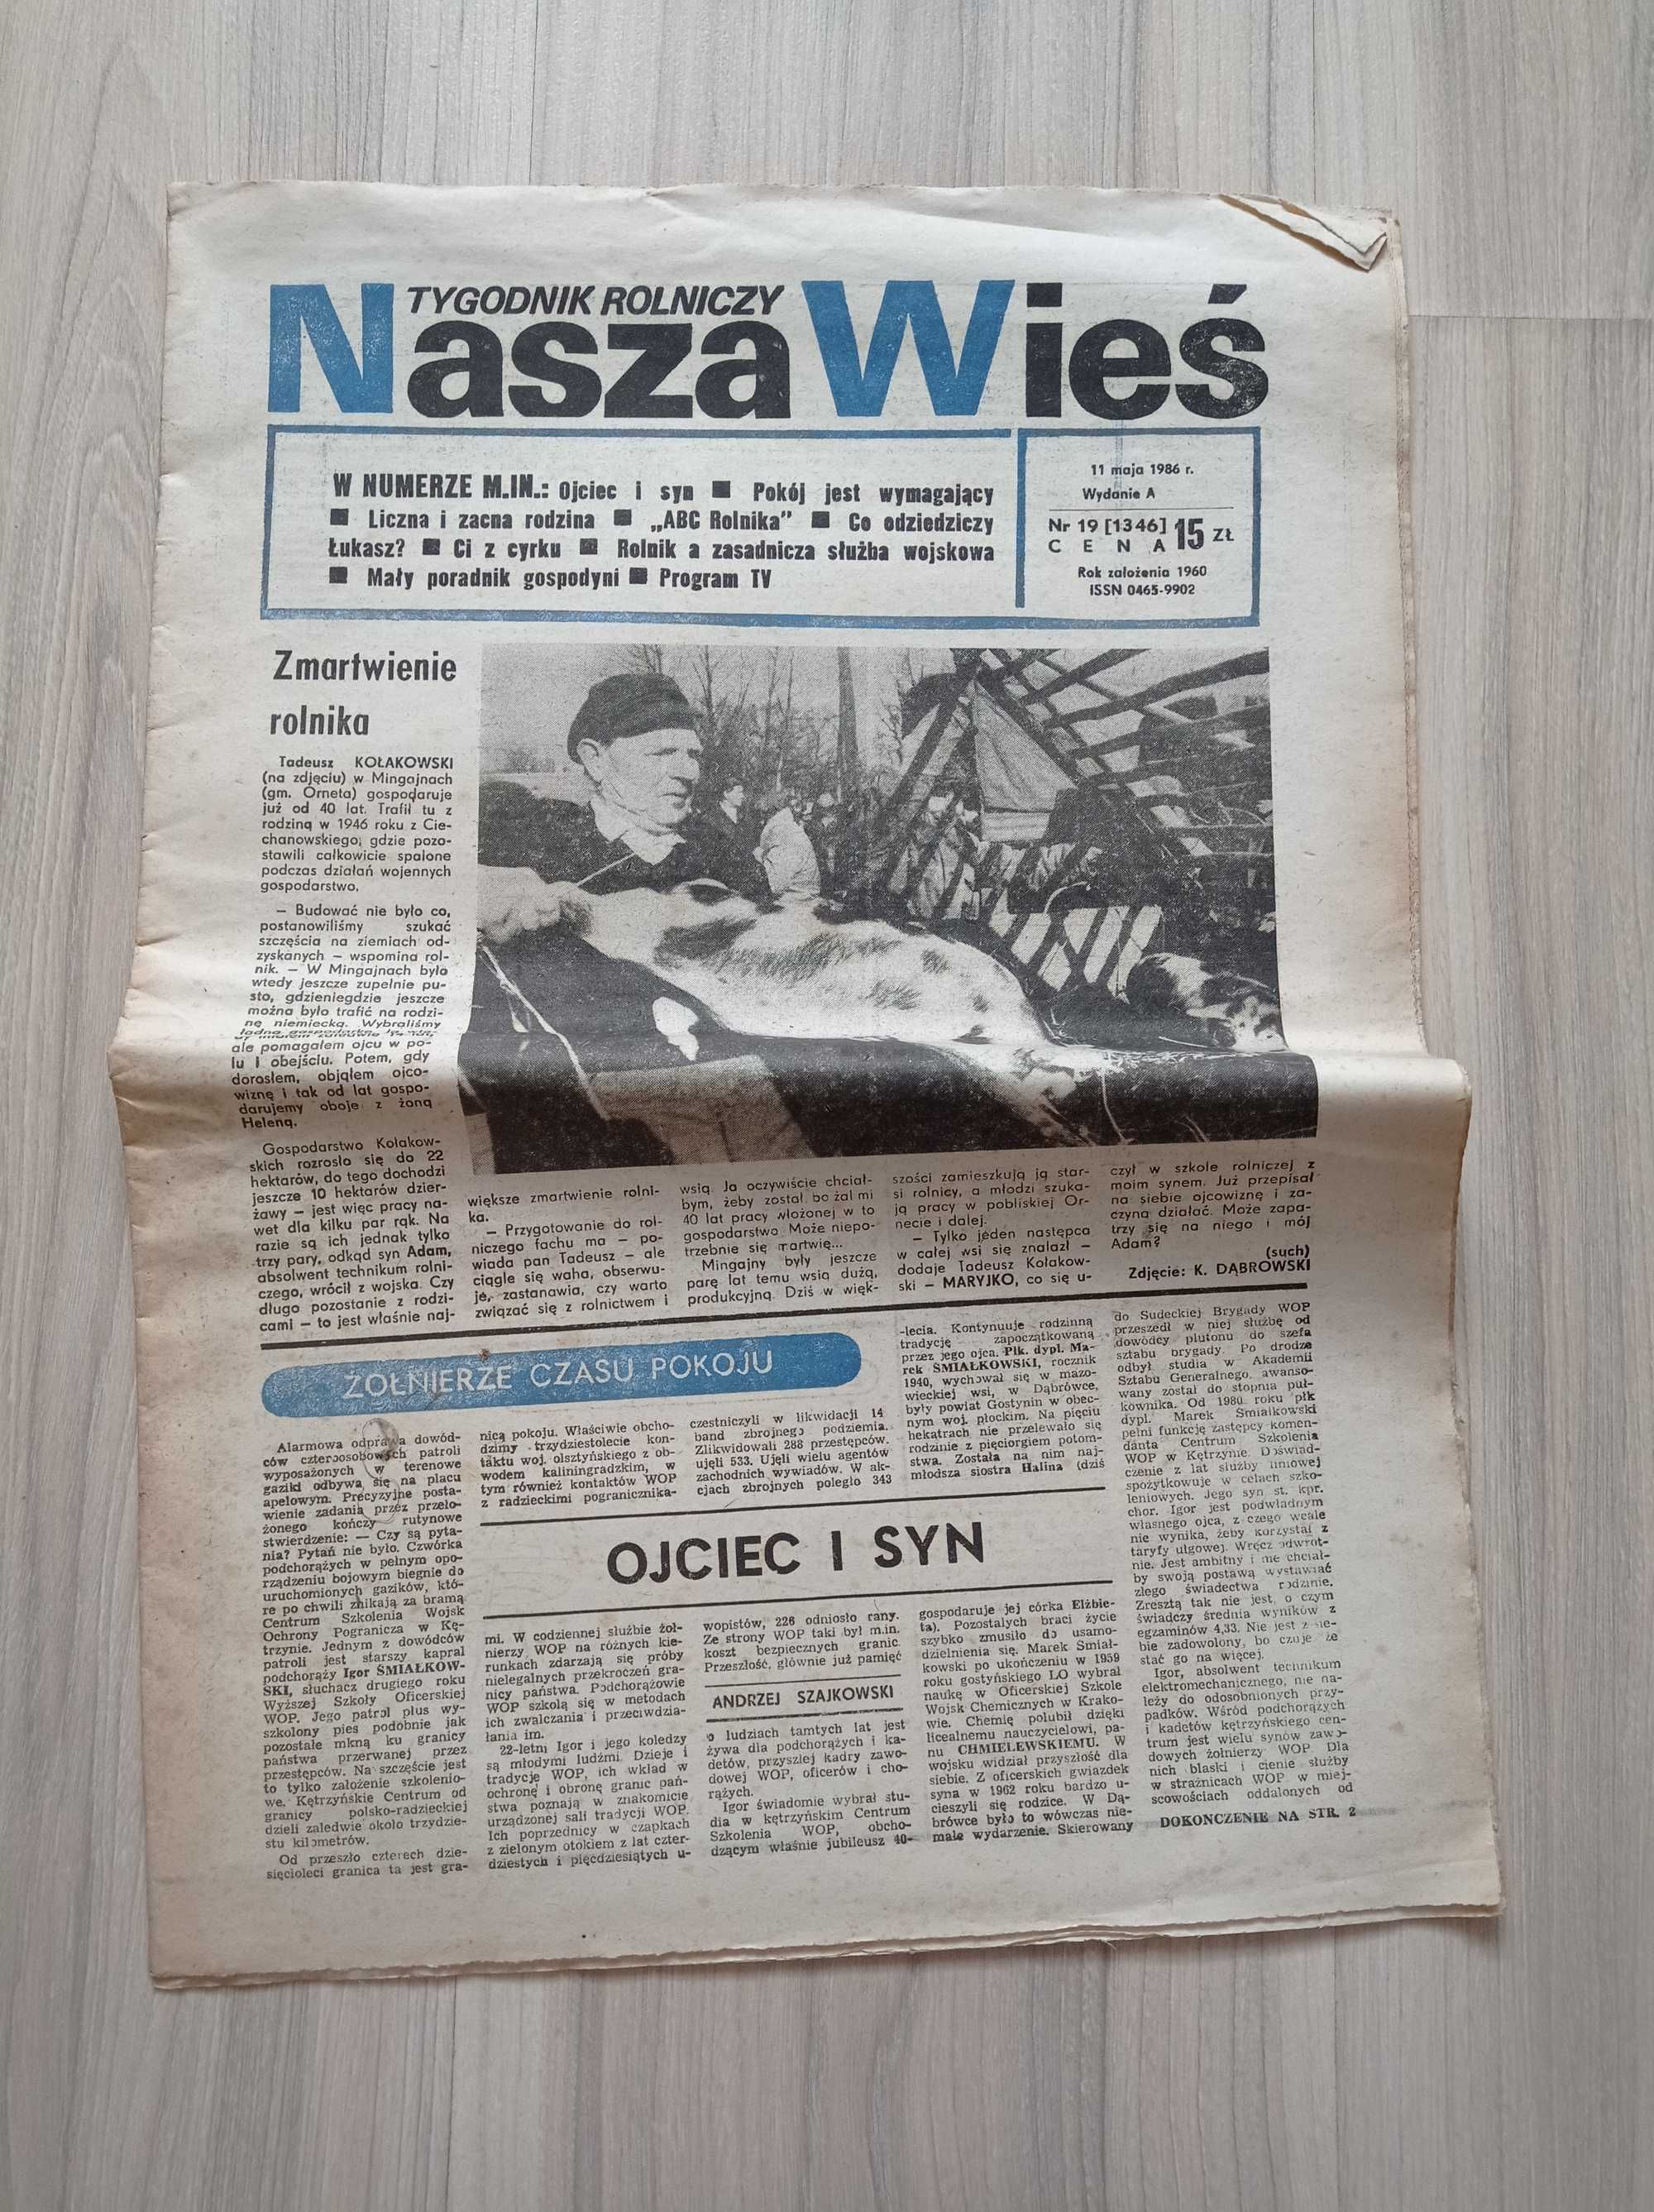 Nasza wieś tygodnik rolniczy, nr 19/1986